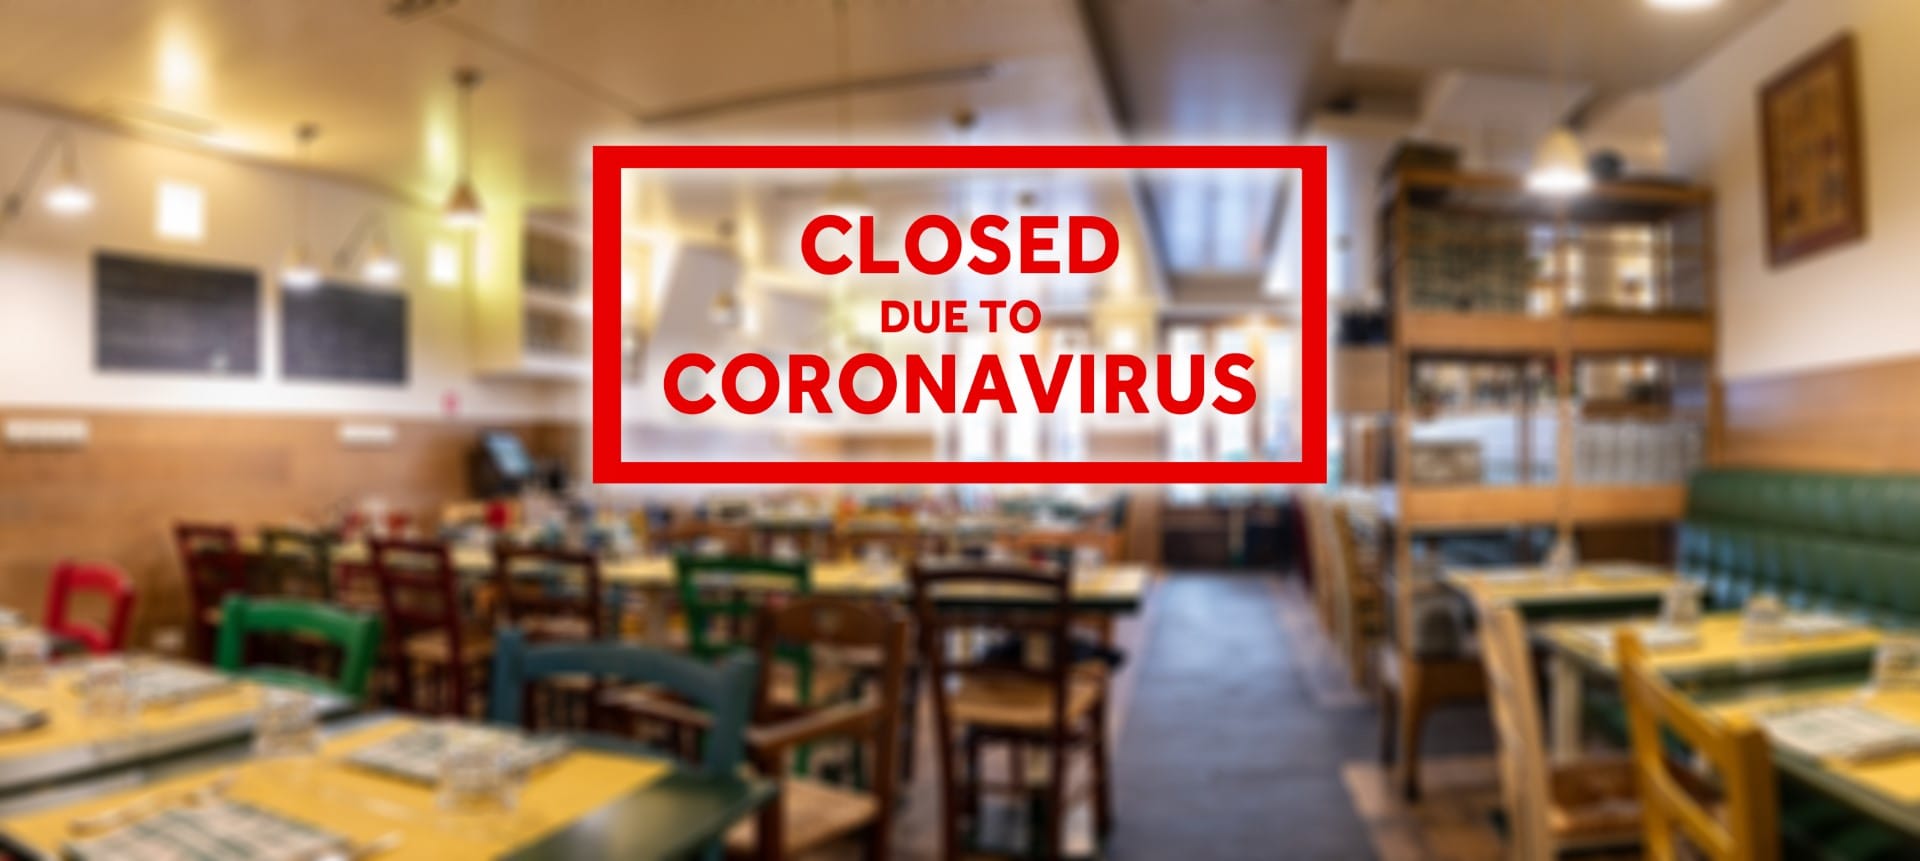 Closed due to coronavirus sign on defocused empty restaurant room